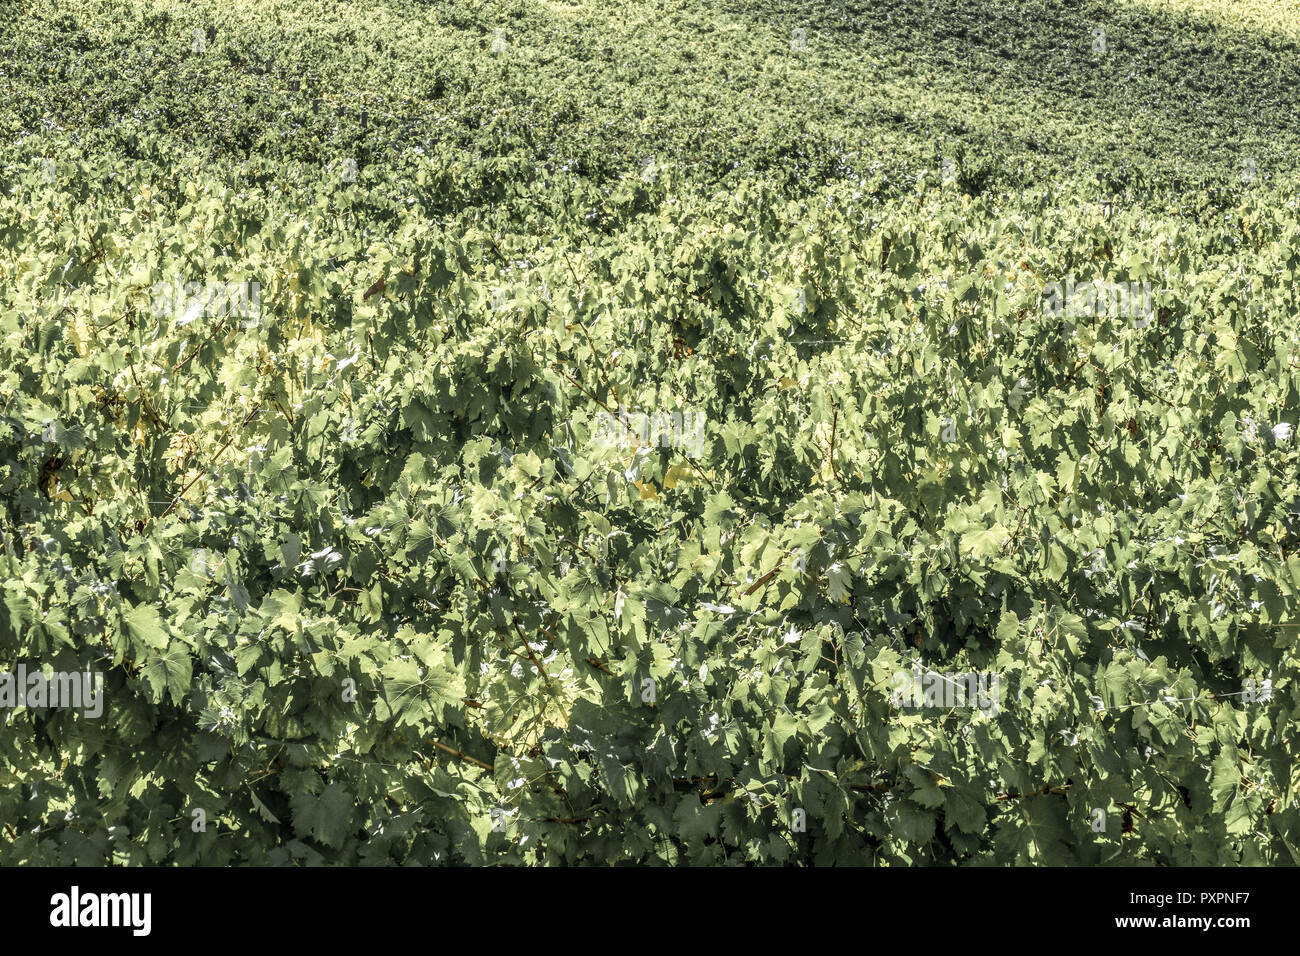 Vineyards in Tuscany, Italy Stock Photo